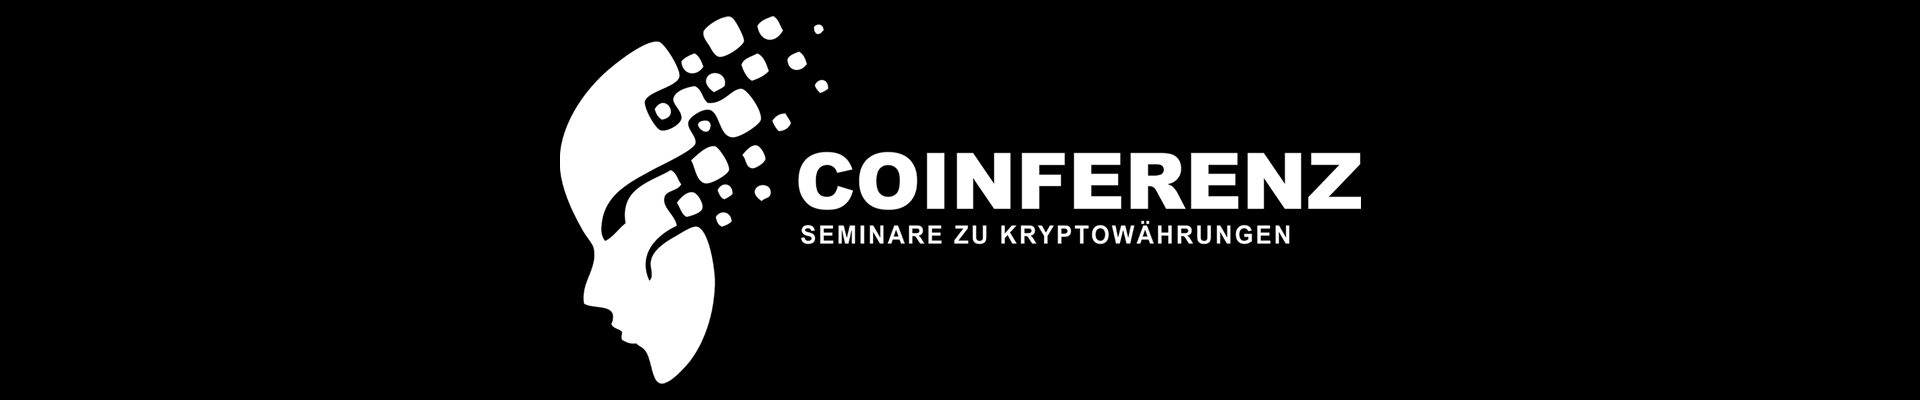 COINFERENZ - Seminare zu Kryptowährungen